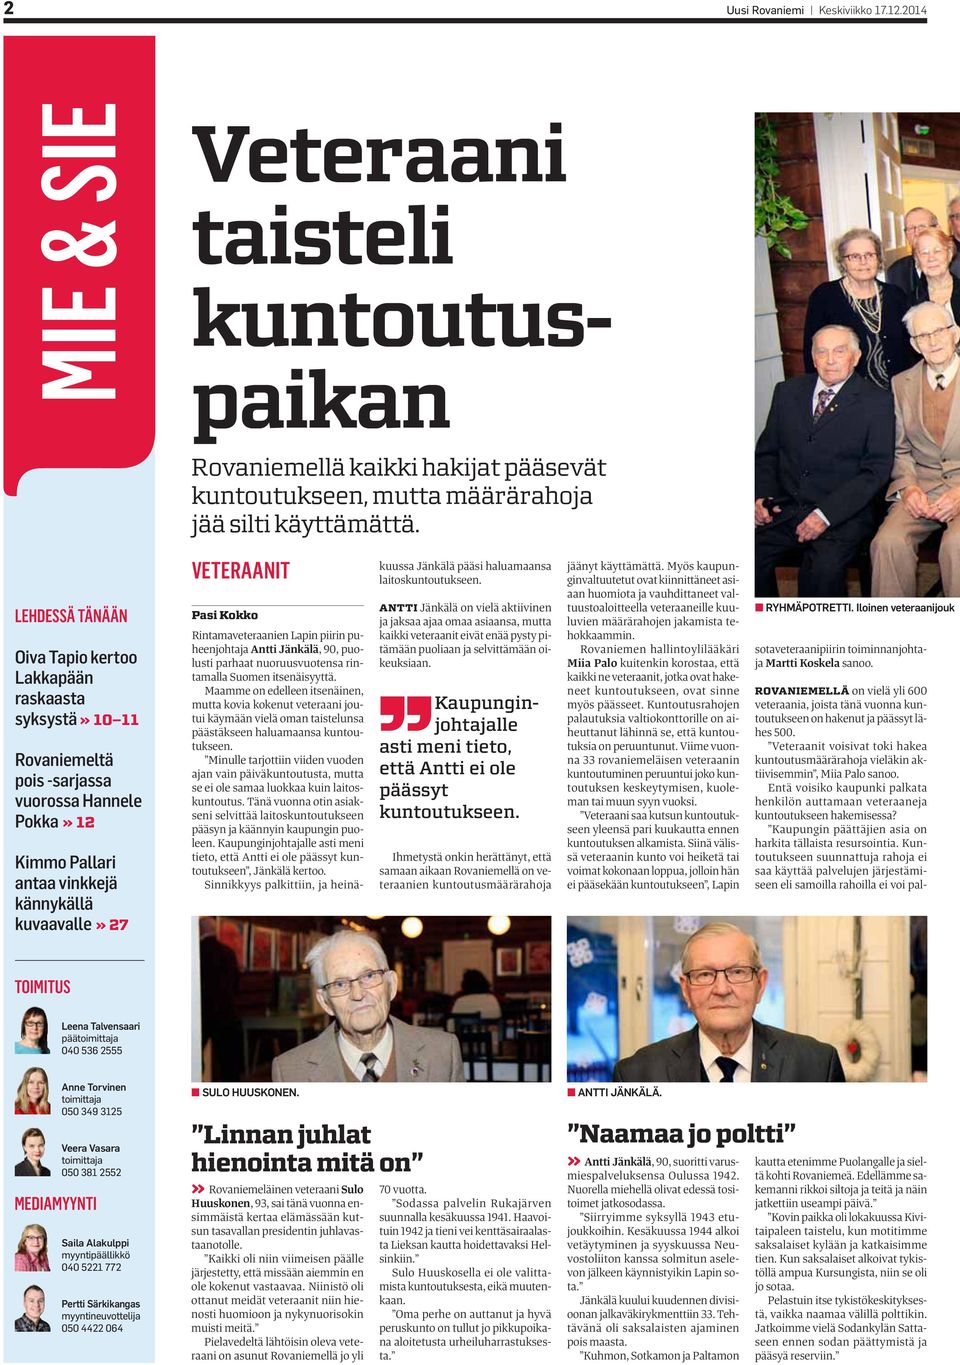 Kokko Rintamaveteraanien Lapin piirin puheenjohtaja Antti Jänkälä, 90, puolusti parhaat nuoruusvuotensa rintamalla Suomen itsenäisyyttä.